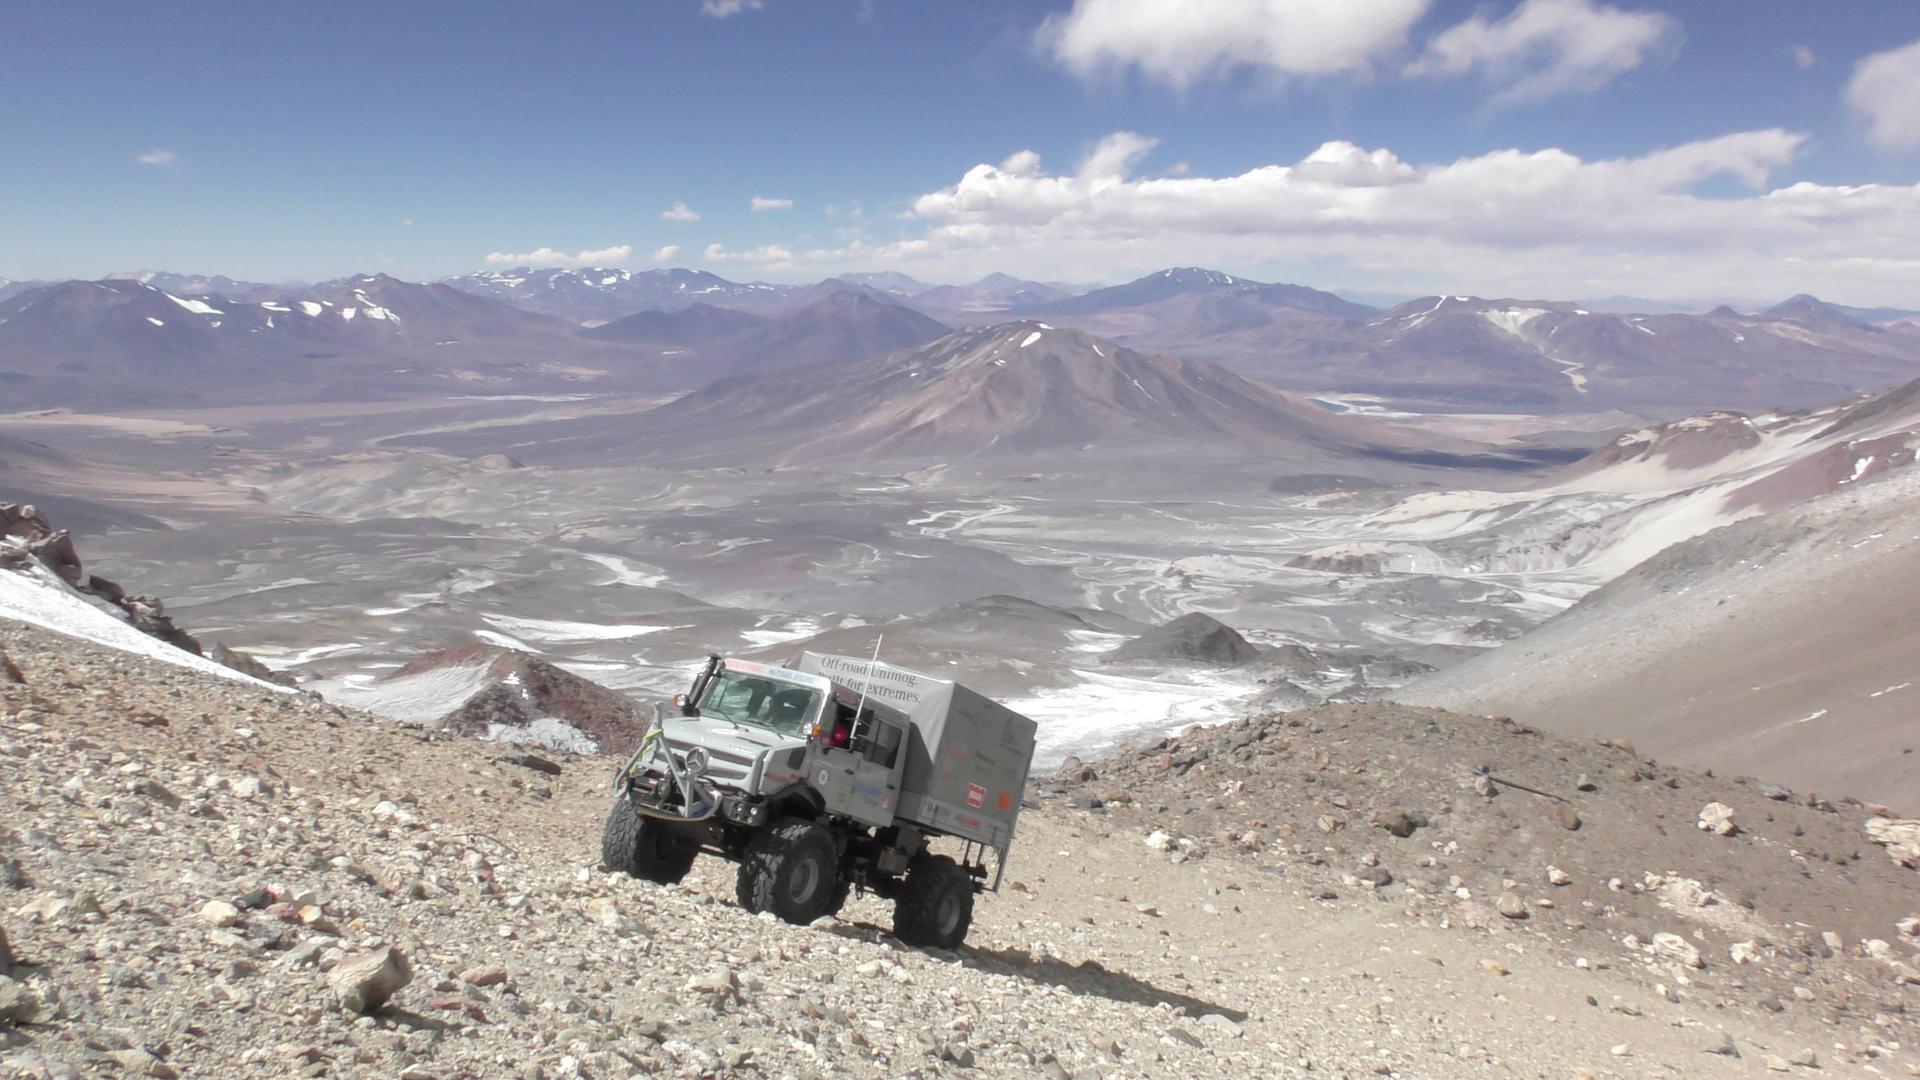 Der Unimog 5023 auf dem Weg zum Gipfel des Vulkanberges Ojos del Salado in der Atacama-Wüste. Bis ganz oben schaffte es der Lastwagen nicht. Mit 6.694 Höhenmetern stellte er aber einen neuen Weltrekord auf.